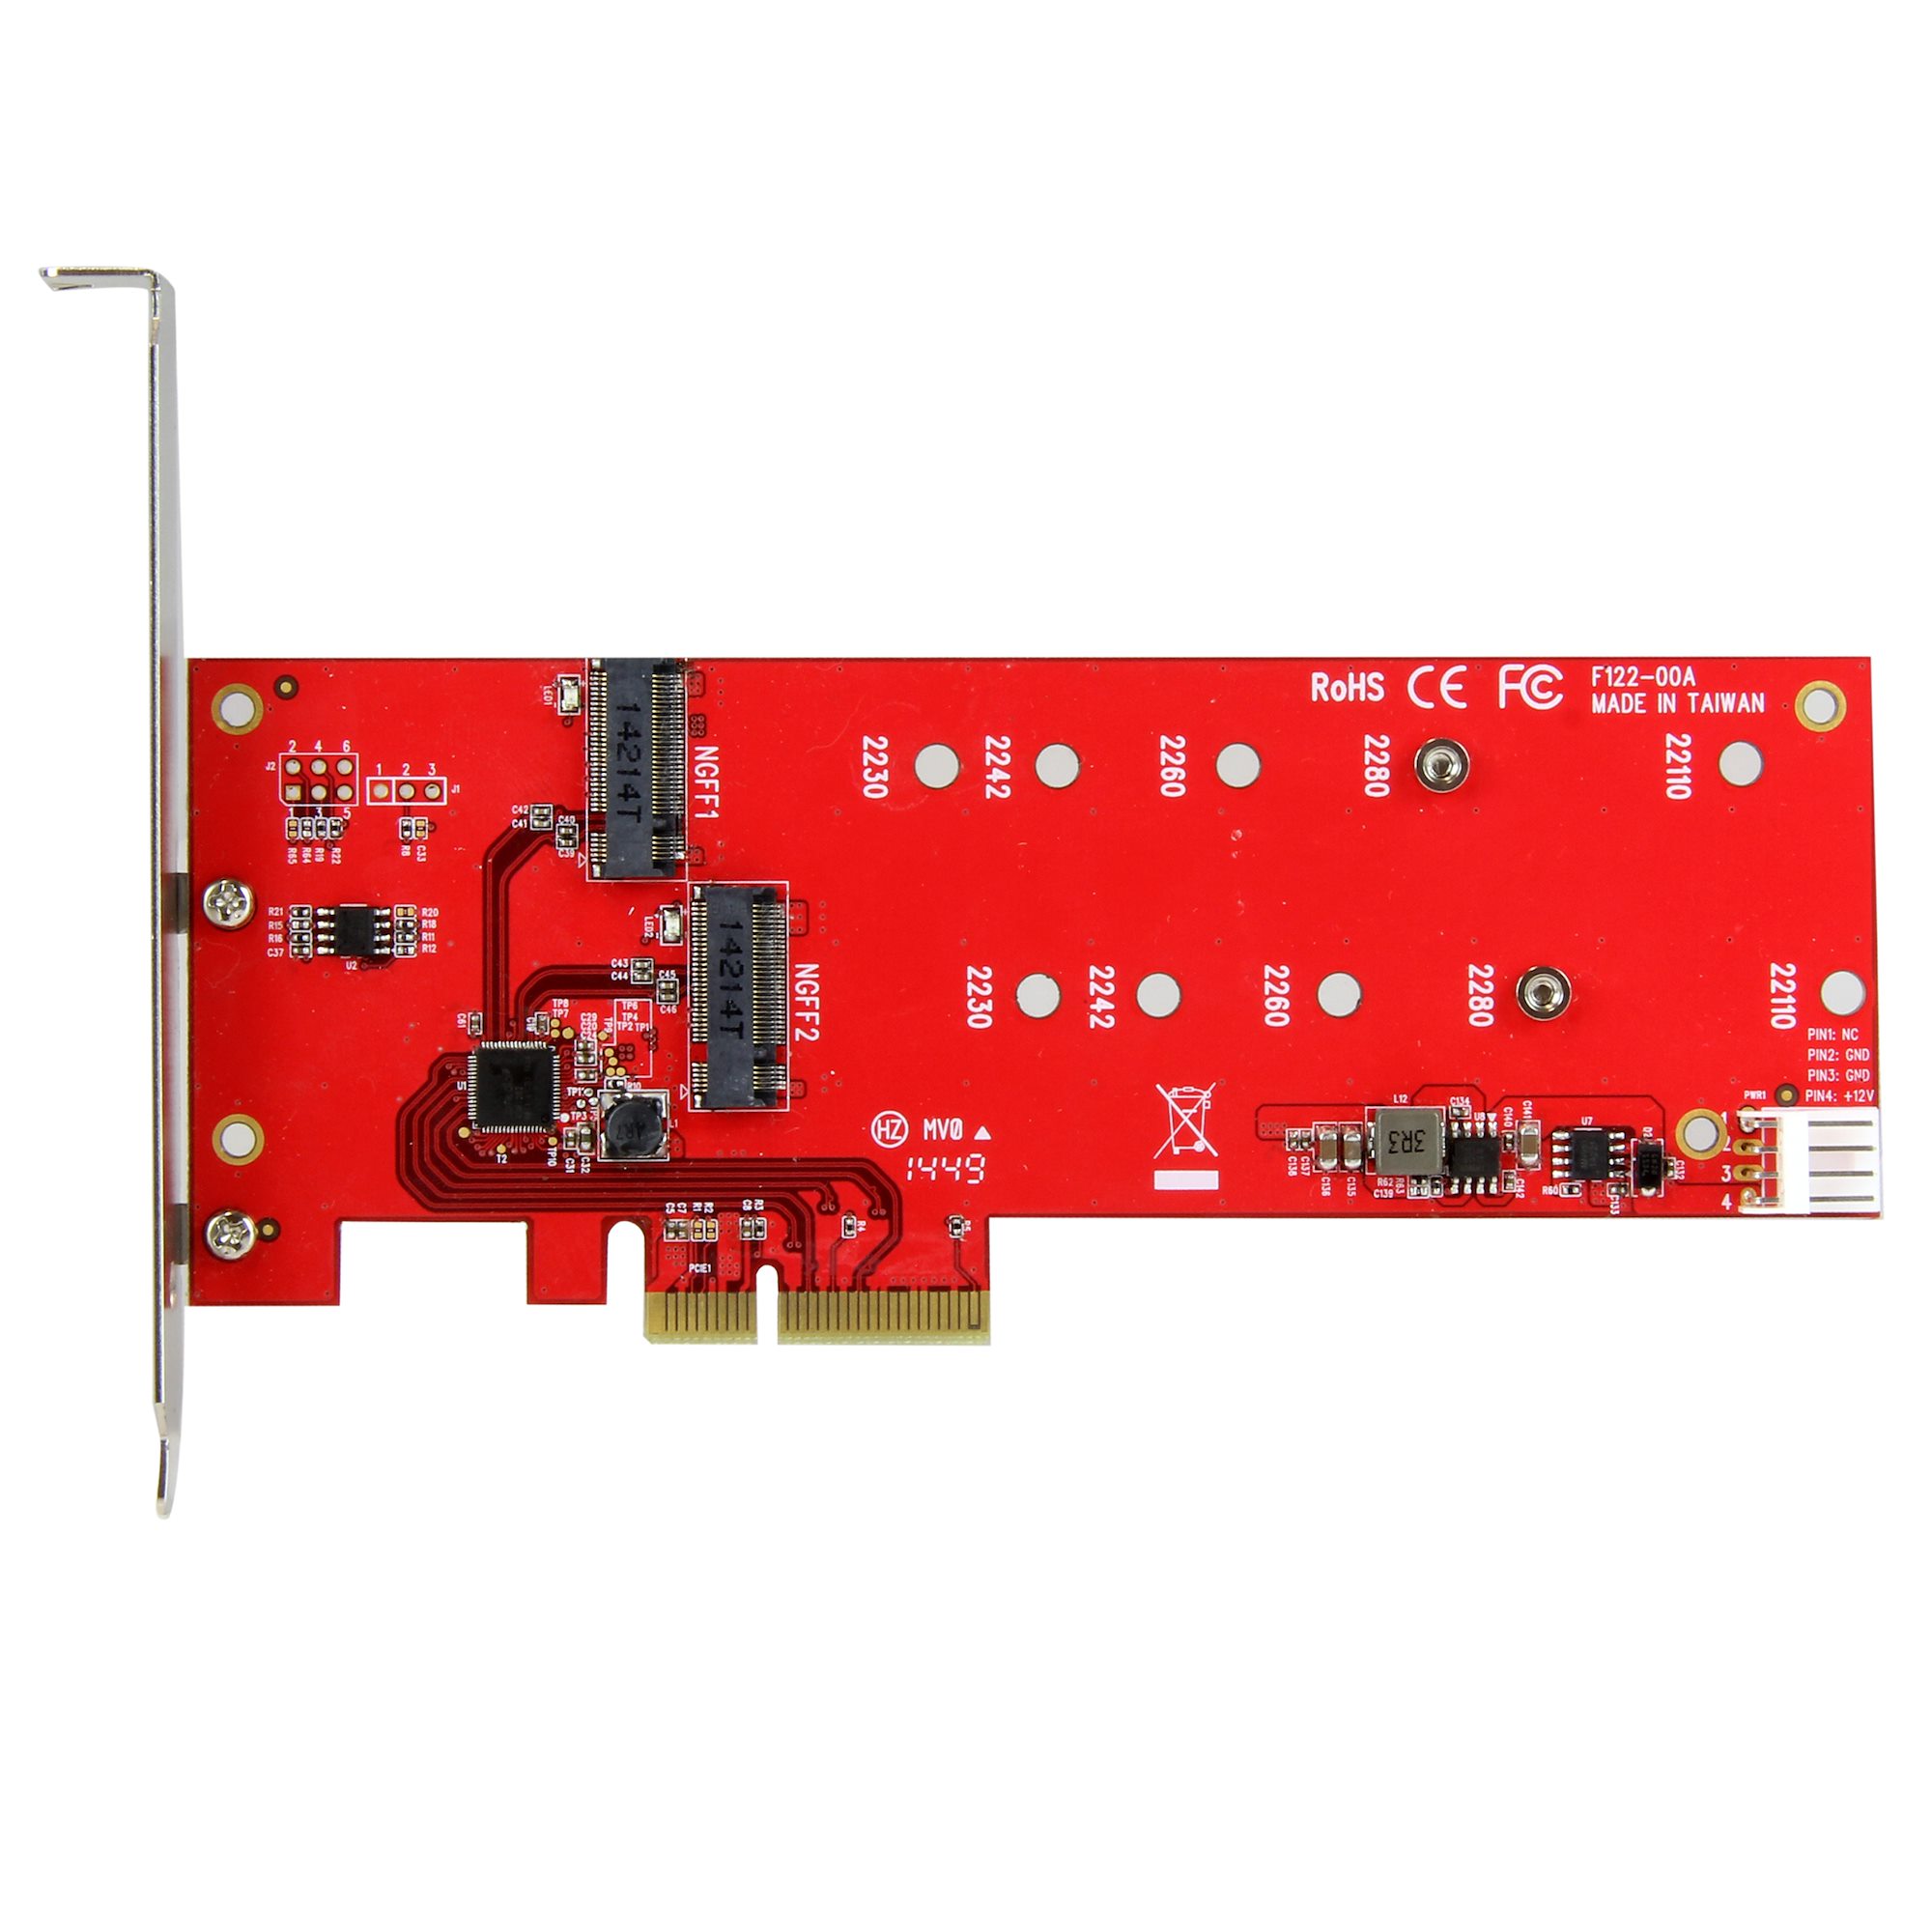 2x M.2 SATA SSD Controller Card - PCIe